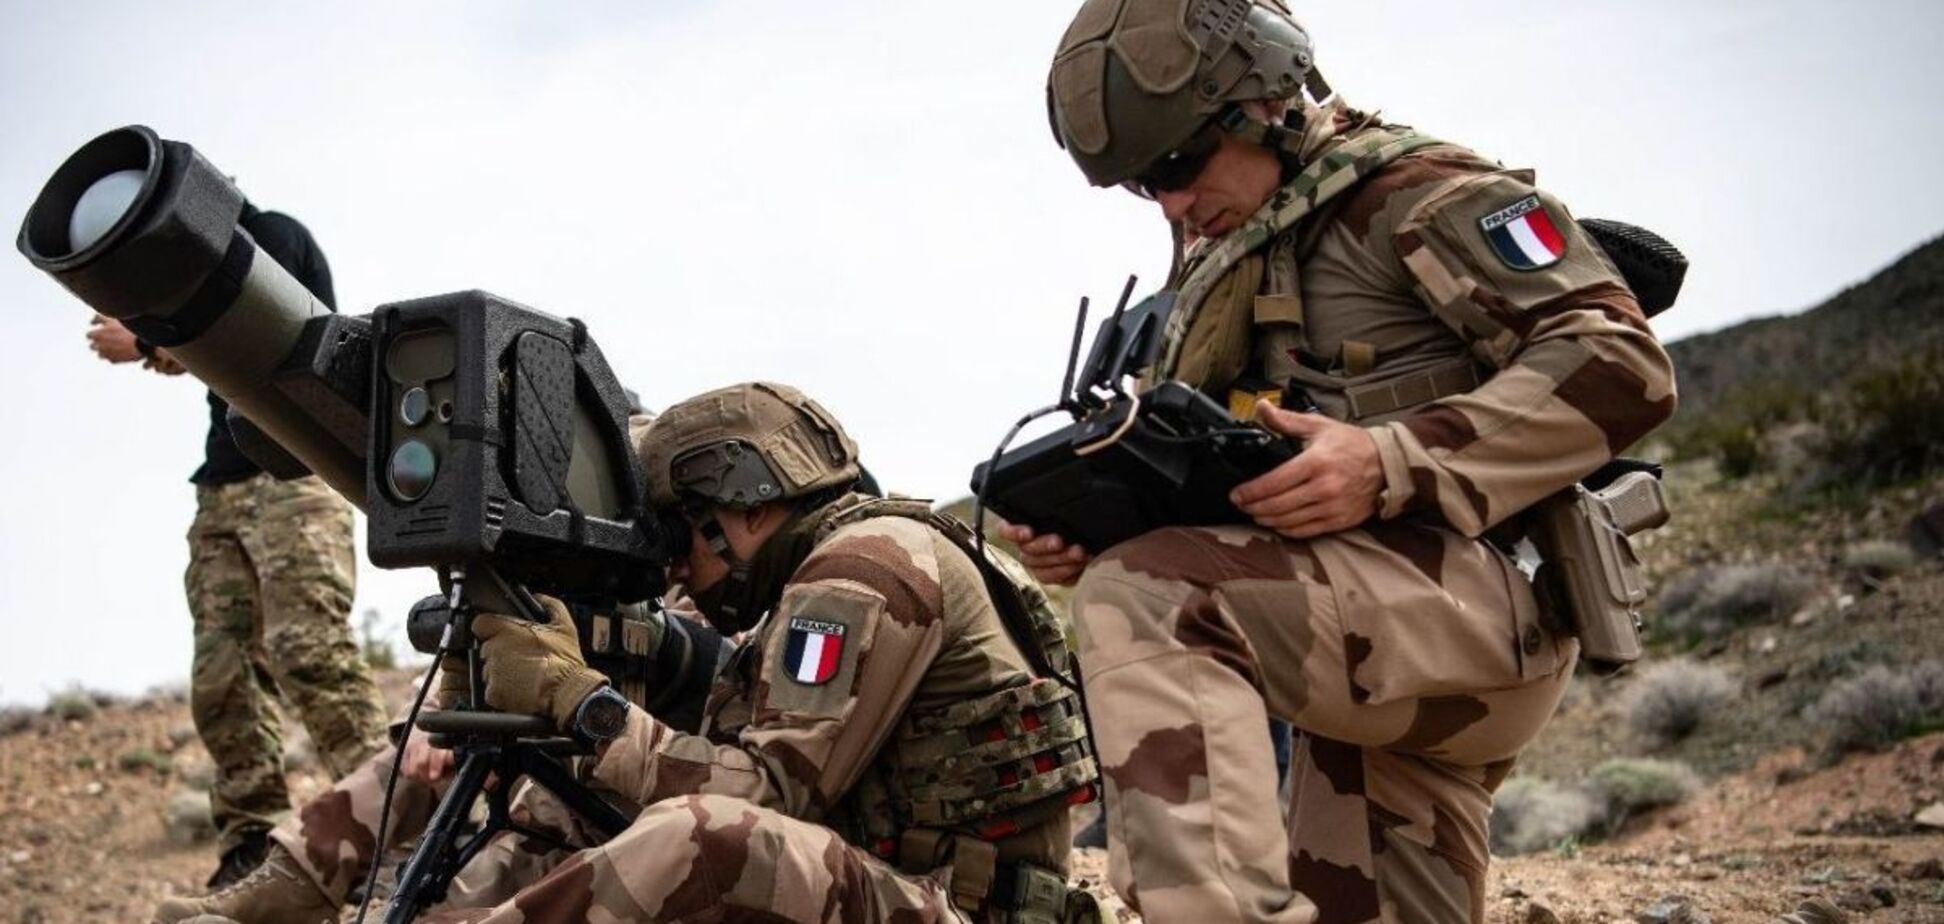 Французькі офіцери вивчають наш досвід та намагаються адаптуватись, – журналіст 